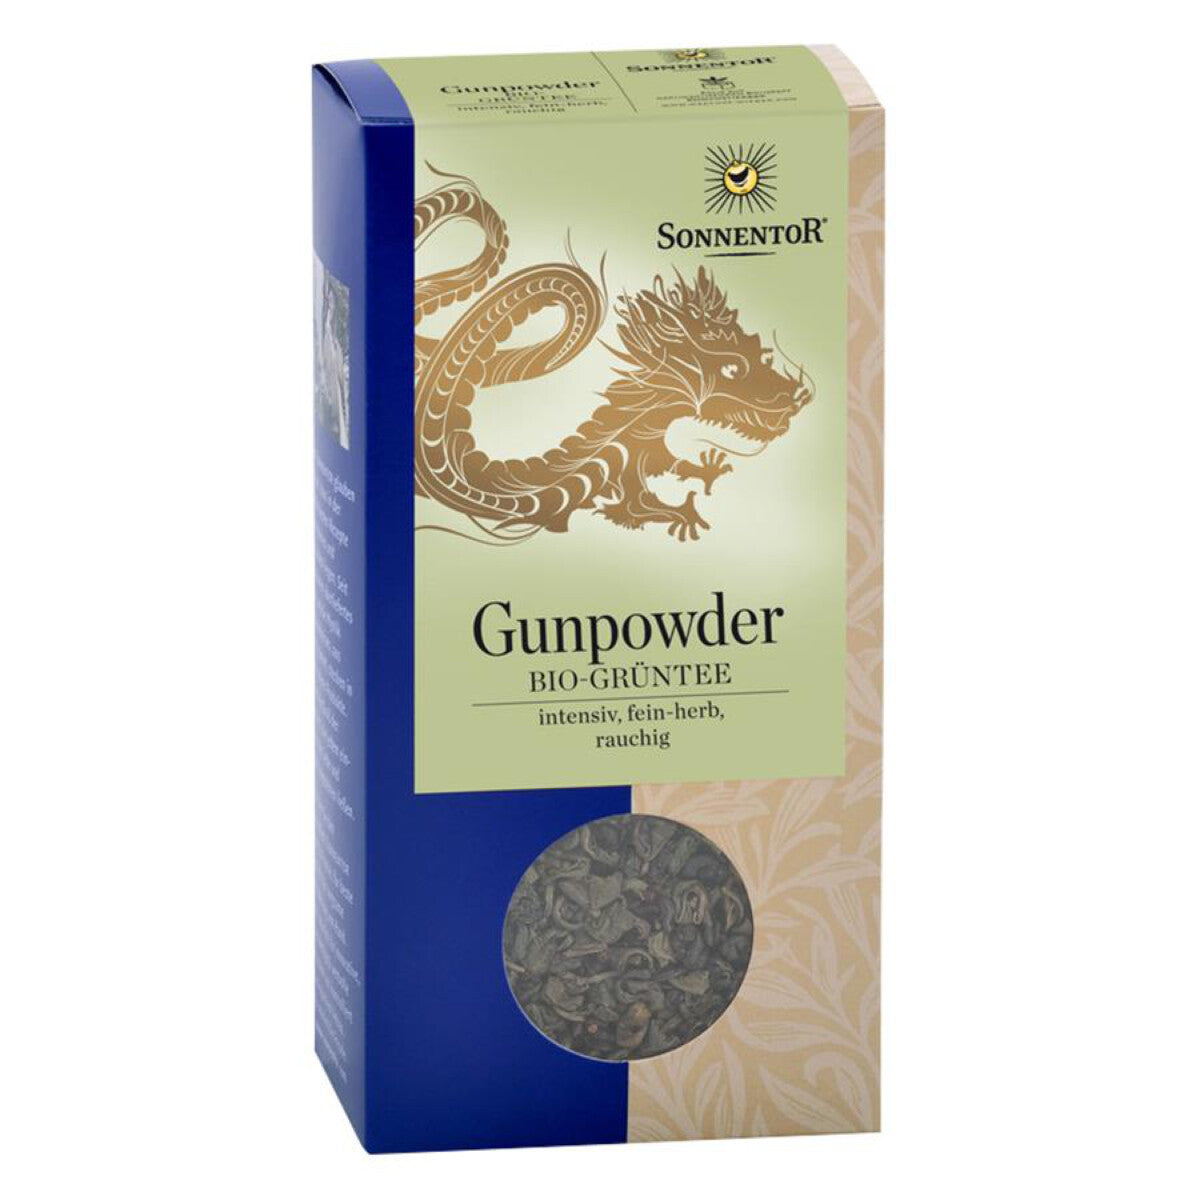 SONNENTOR Chinesischer Grüntee Gunpowder - 100 g